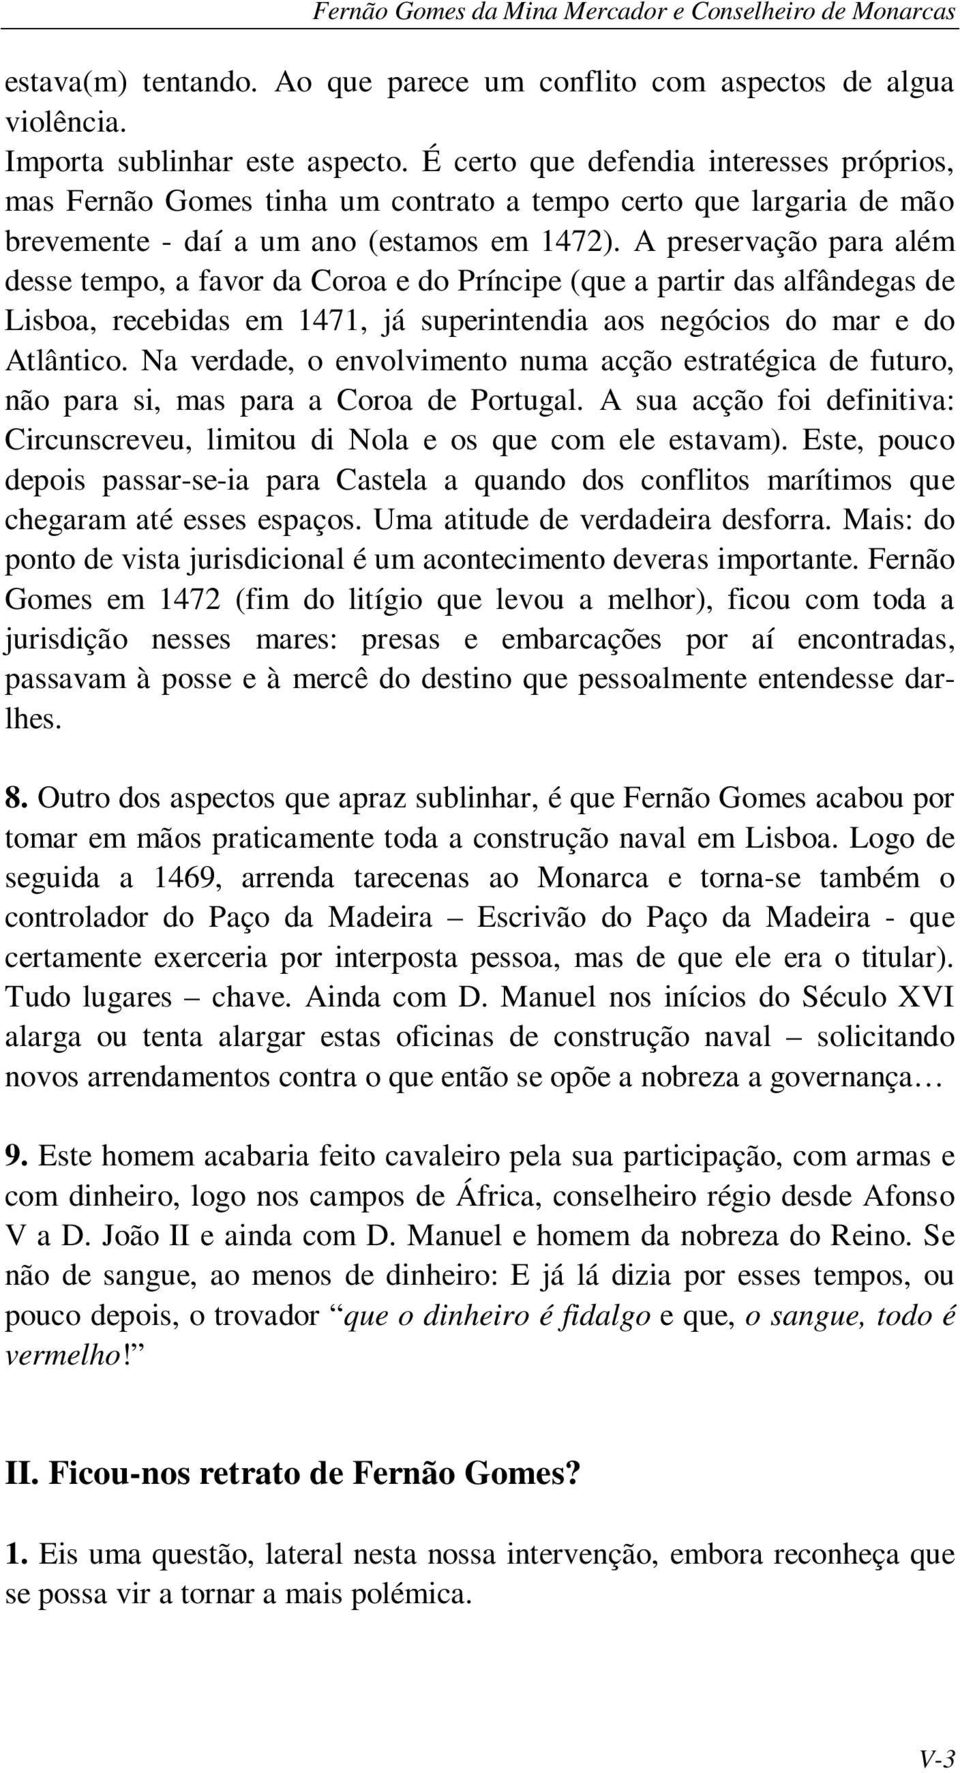 A preservação para além desse tempo, a favor da Coroa e do Príncipe (que a partir das alfândegas de Lisboa, recebidas em 1471, já superintendia aos negócios do mar e do Atlântico.